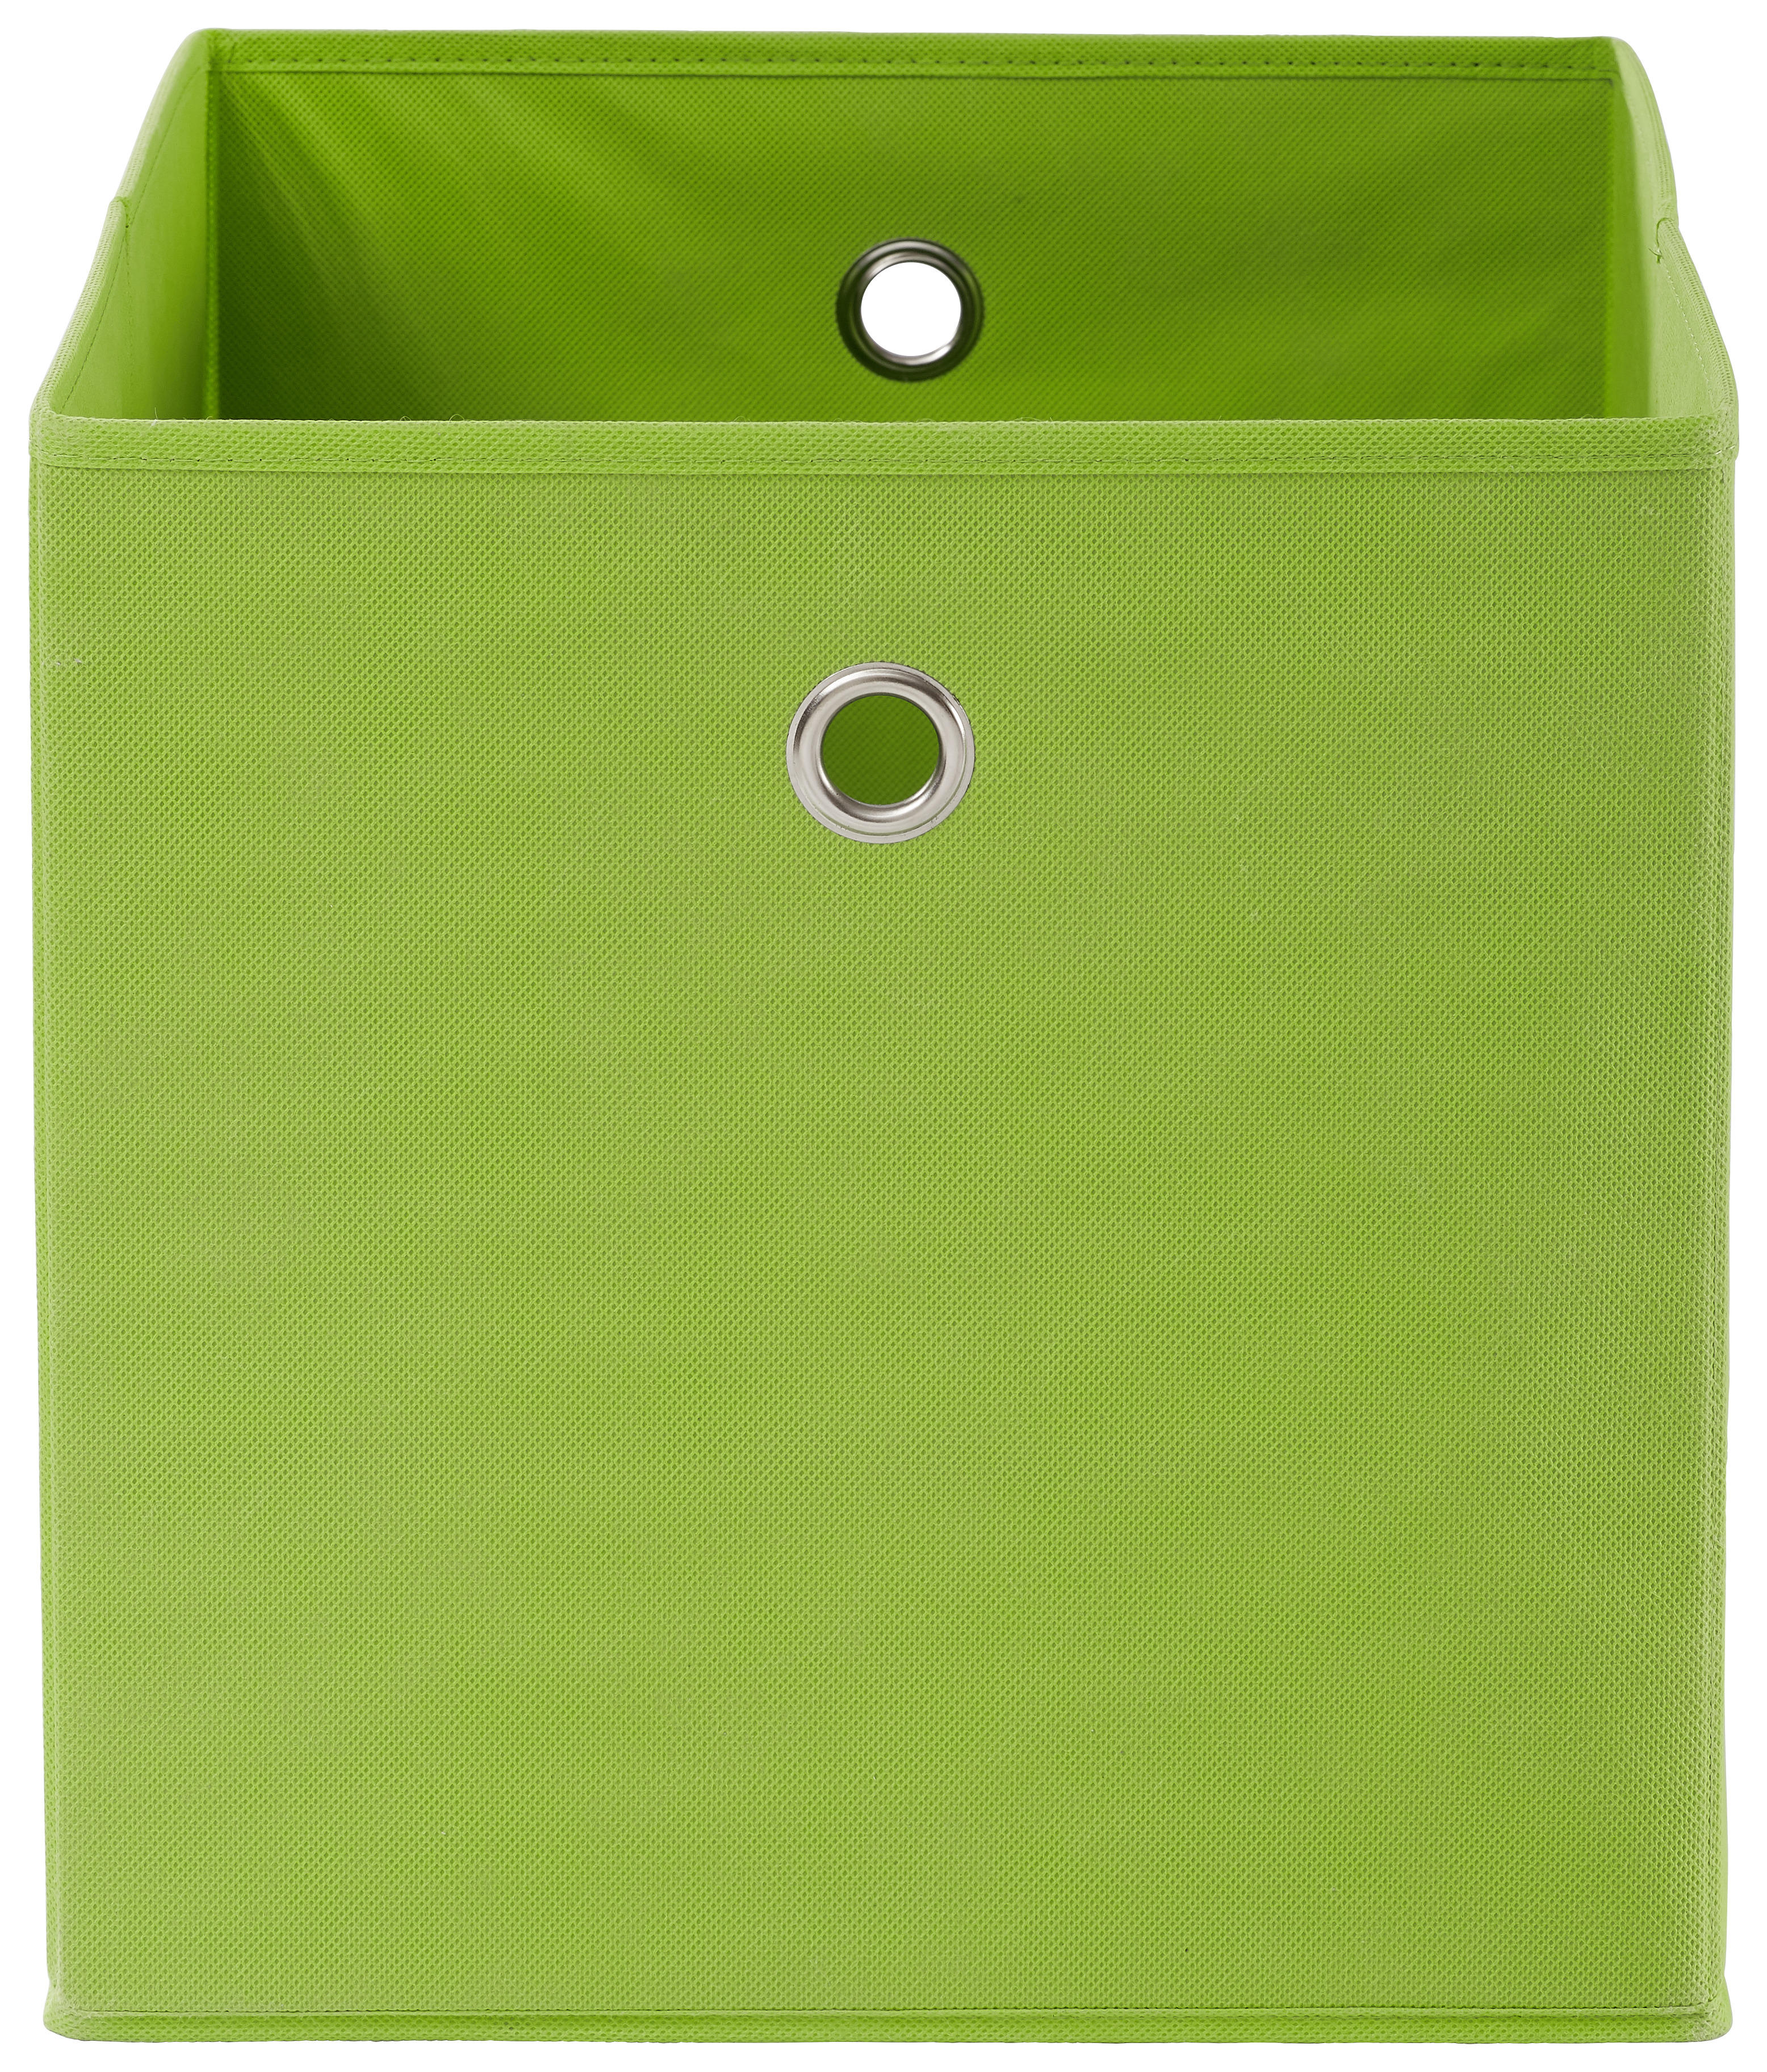 SKLADACÍ BOX, kov, textil, kartón, 32/32/32 cm - zelená/strieborná, Design, kartón/kov (32/32/32cm) - Carryhome